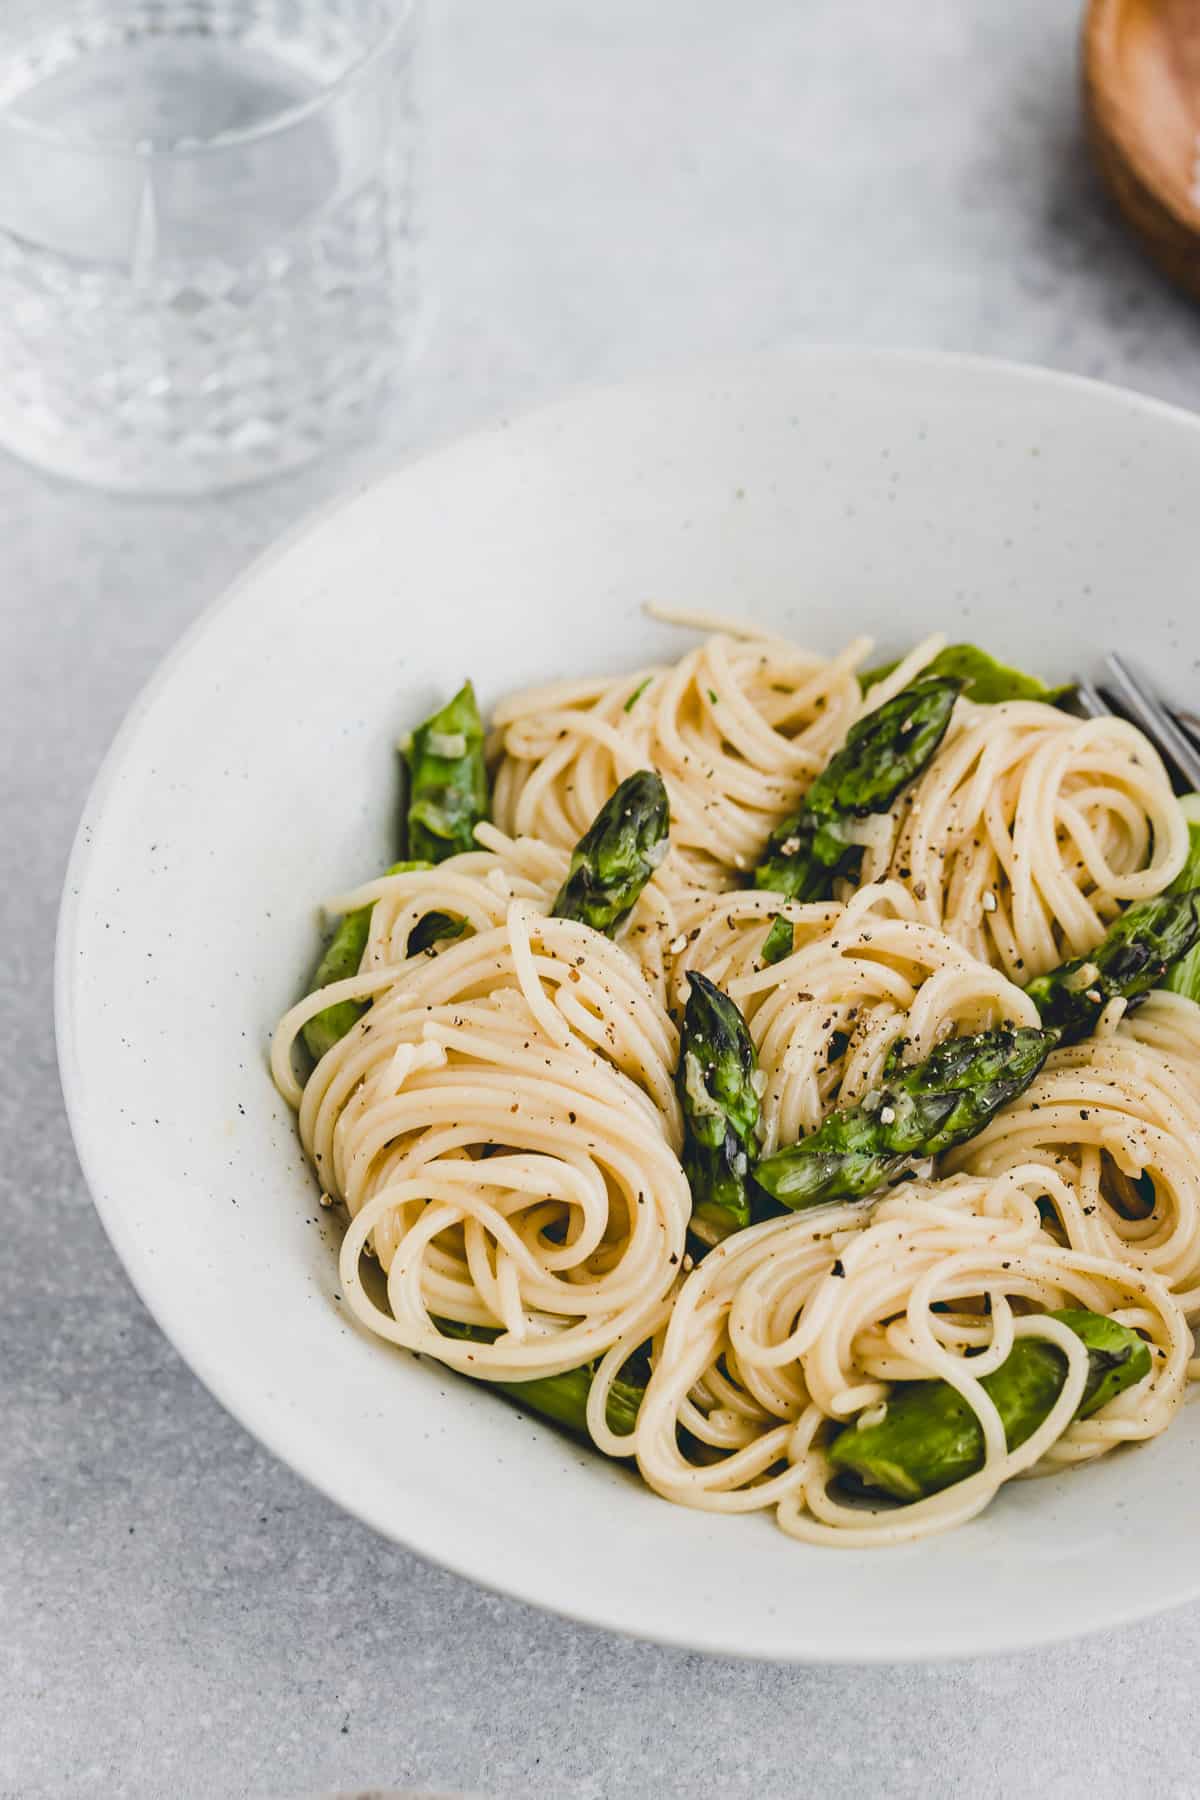 grüner spargel mit pasta und carbonara sauce